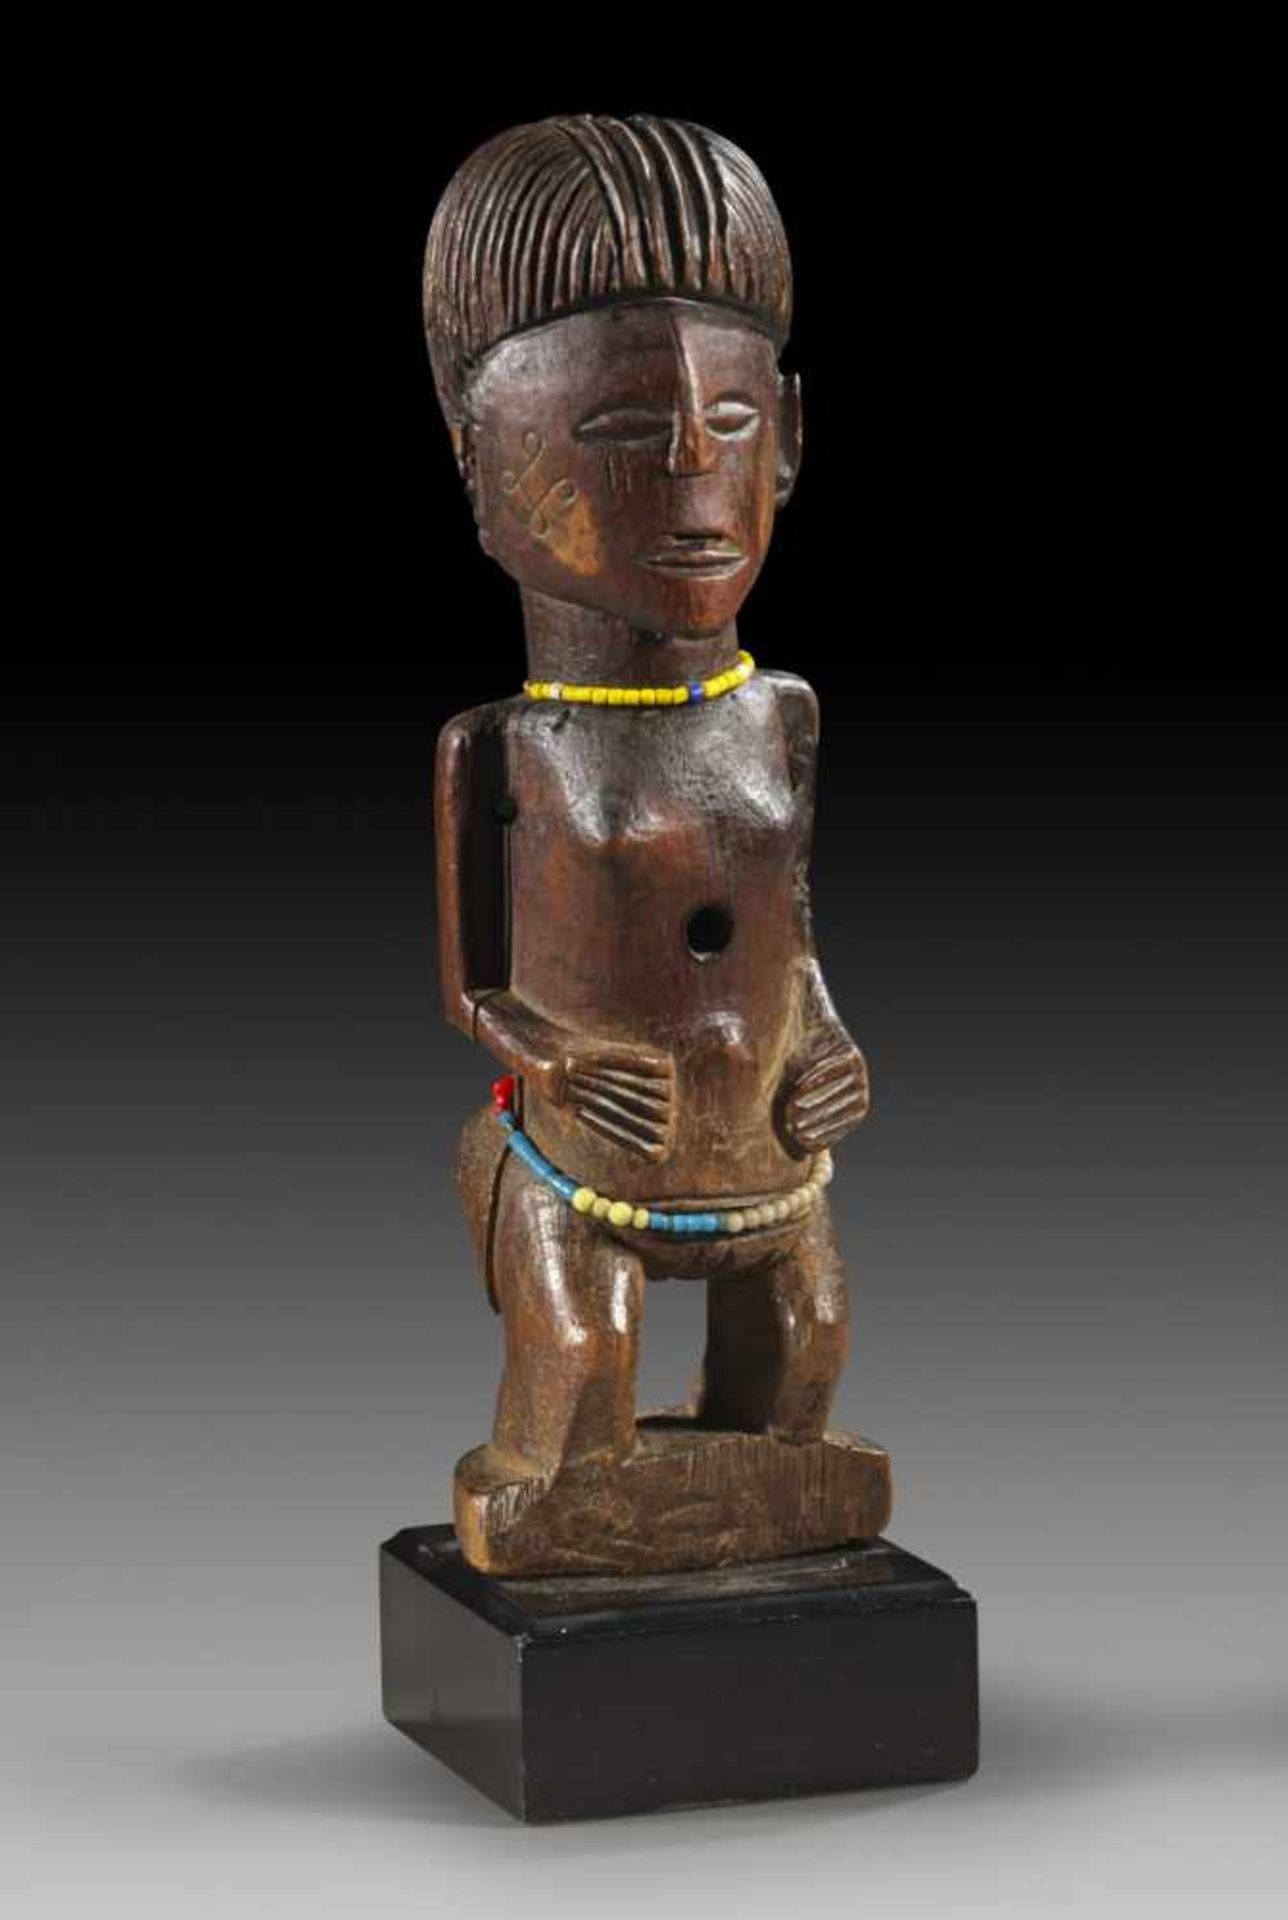 Stehende weibliche Figur. Luena (Lovale, Lwena), Angola. H 28,5cm. Mit angelegten Armen und